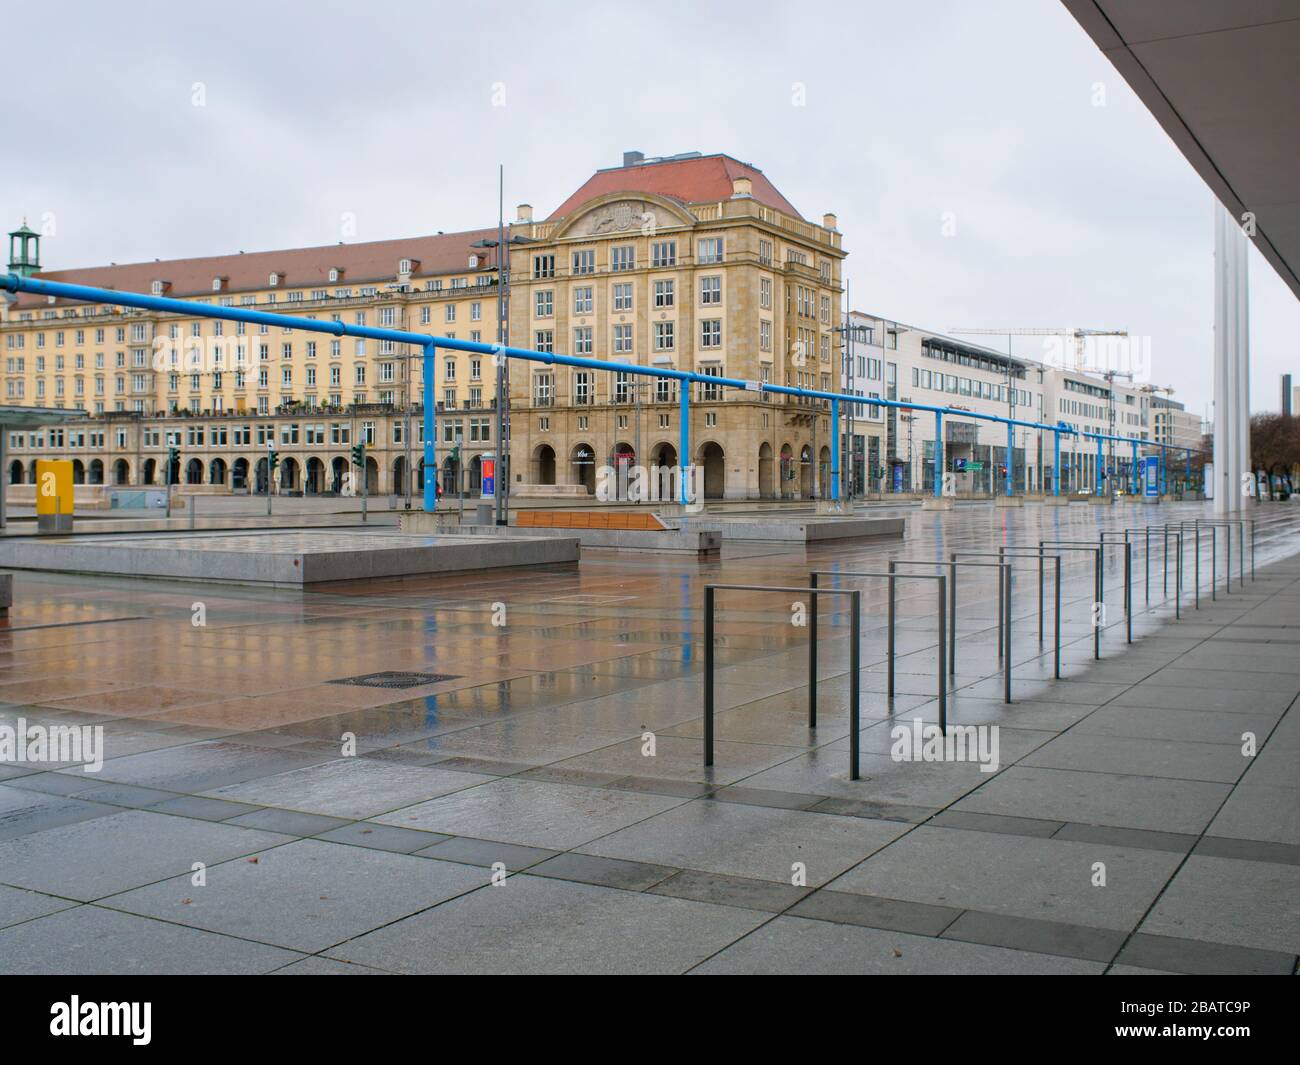 Platz vor dem Kulturpalast a Dresda während Coronavirus Lockdown Wilsdruffer Straße leere Bänke und leere Haltestelle im Regen Foto Stock